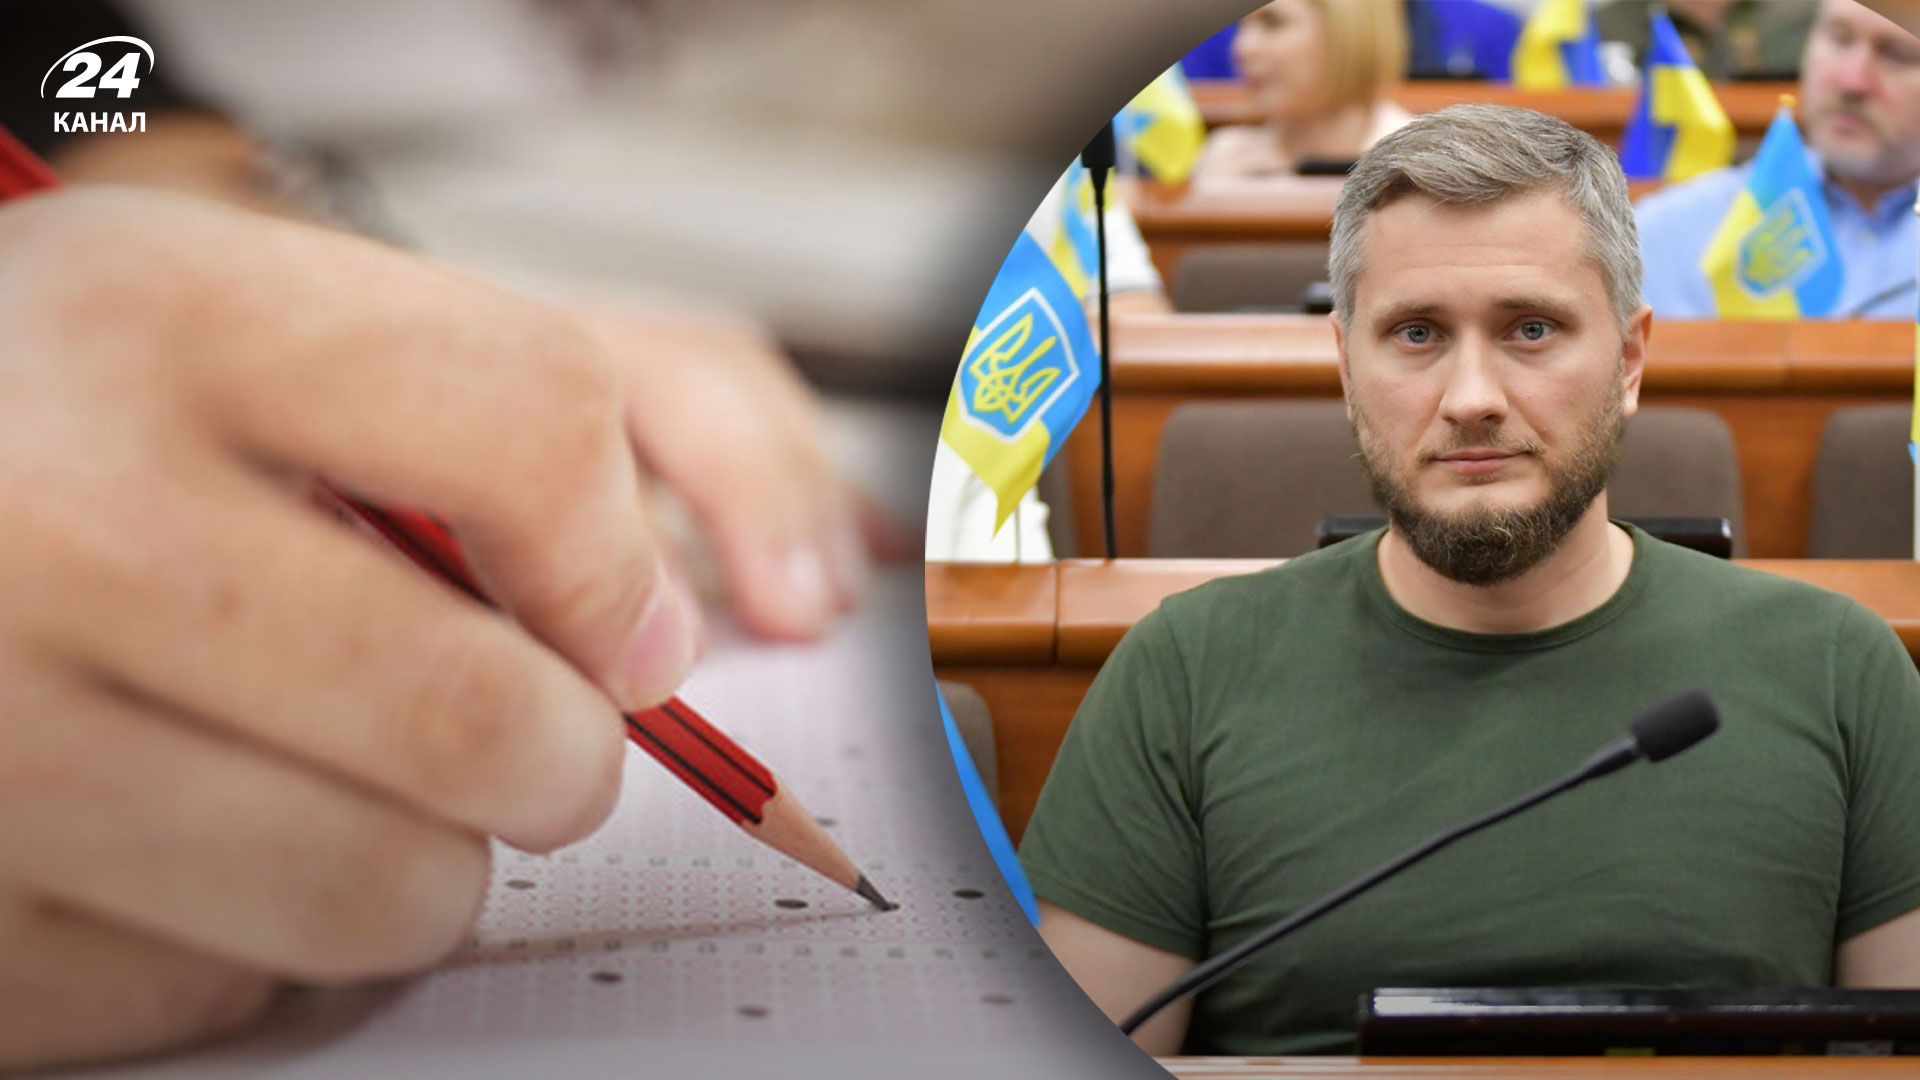 Український IT-підприємець закликав компанії впровадити тести на адекватність для кандидатів на роботу з Росії